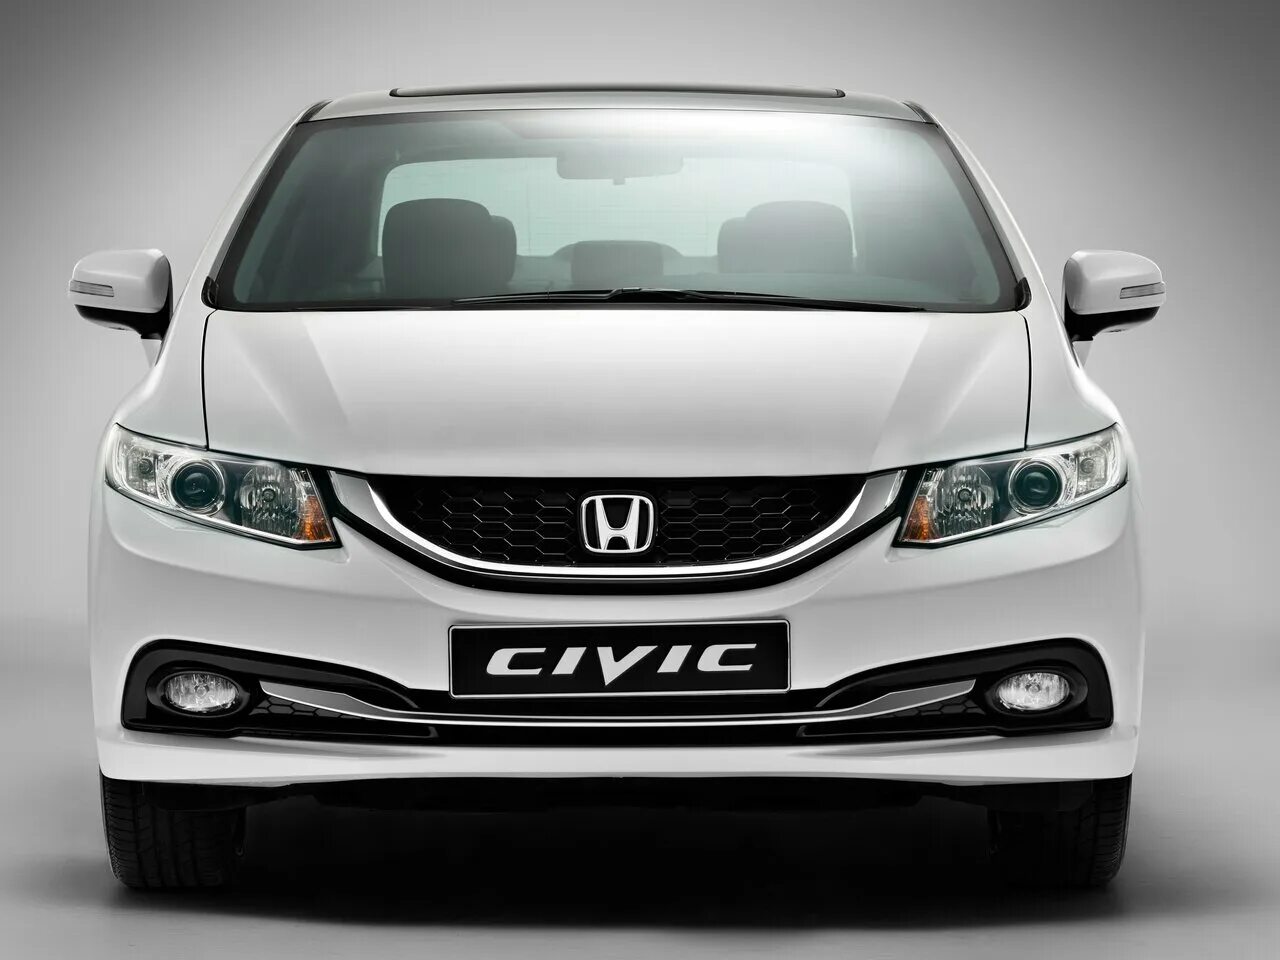 Honda Civic 2013 седан. Honda Civic 4d 2014. Honda Civic 4d 2015. Honda Civic 2014 седан. Honda civic рестайлинг